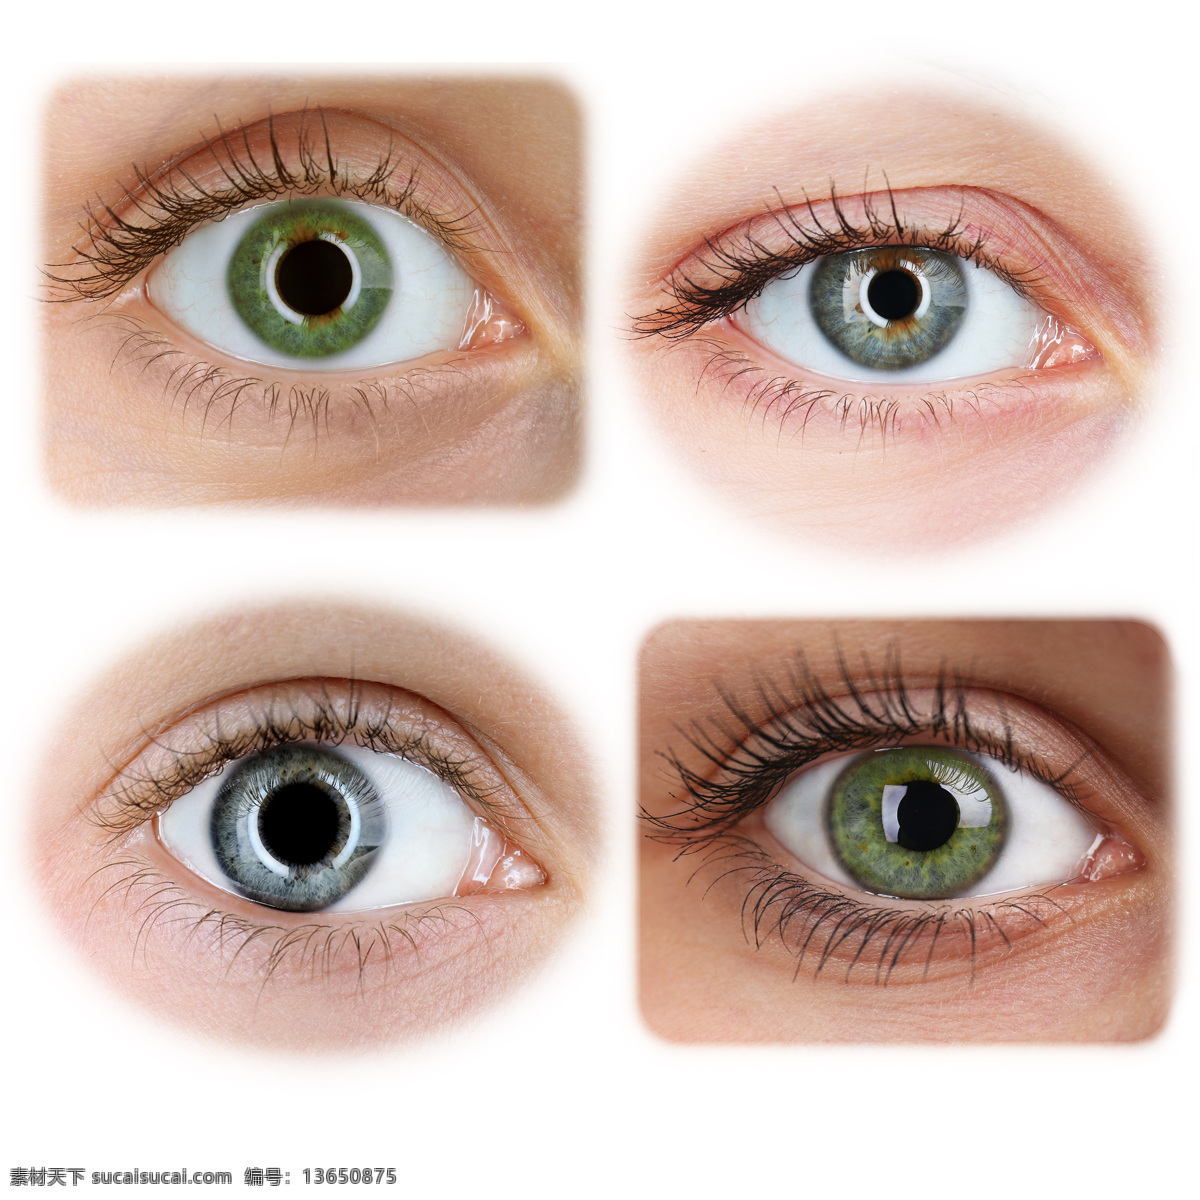 各种 表情 眼睛 视网膜 眼球 眼球结构组织 瞳孔 性感美女 人体器官 人体器官图 人物图片